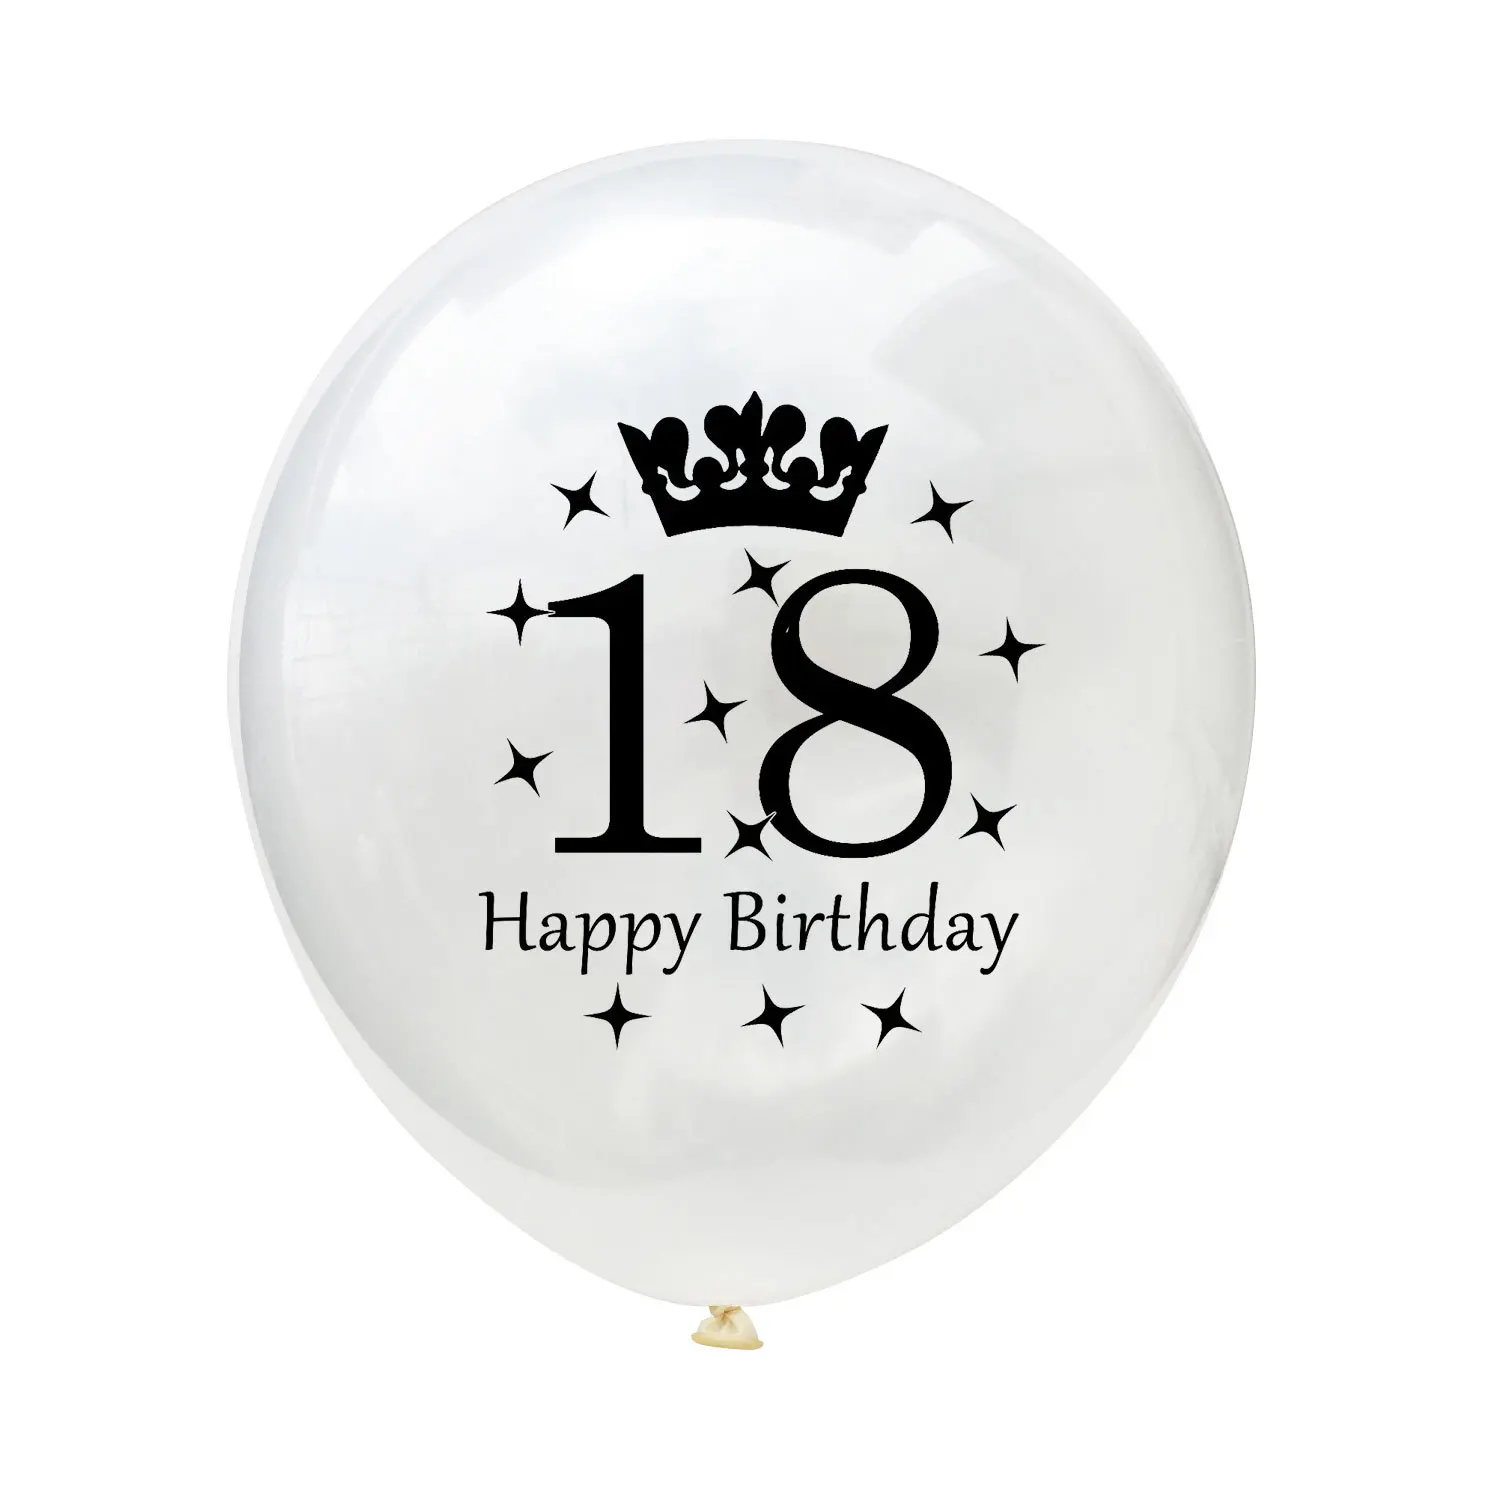 15 шт./компл. 12 дюймов с днем рождения воздушные шары с конфетти цвета розовое золото 18 лет гелиевый воздух латексный шар взрослых день рождения поставка